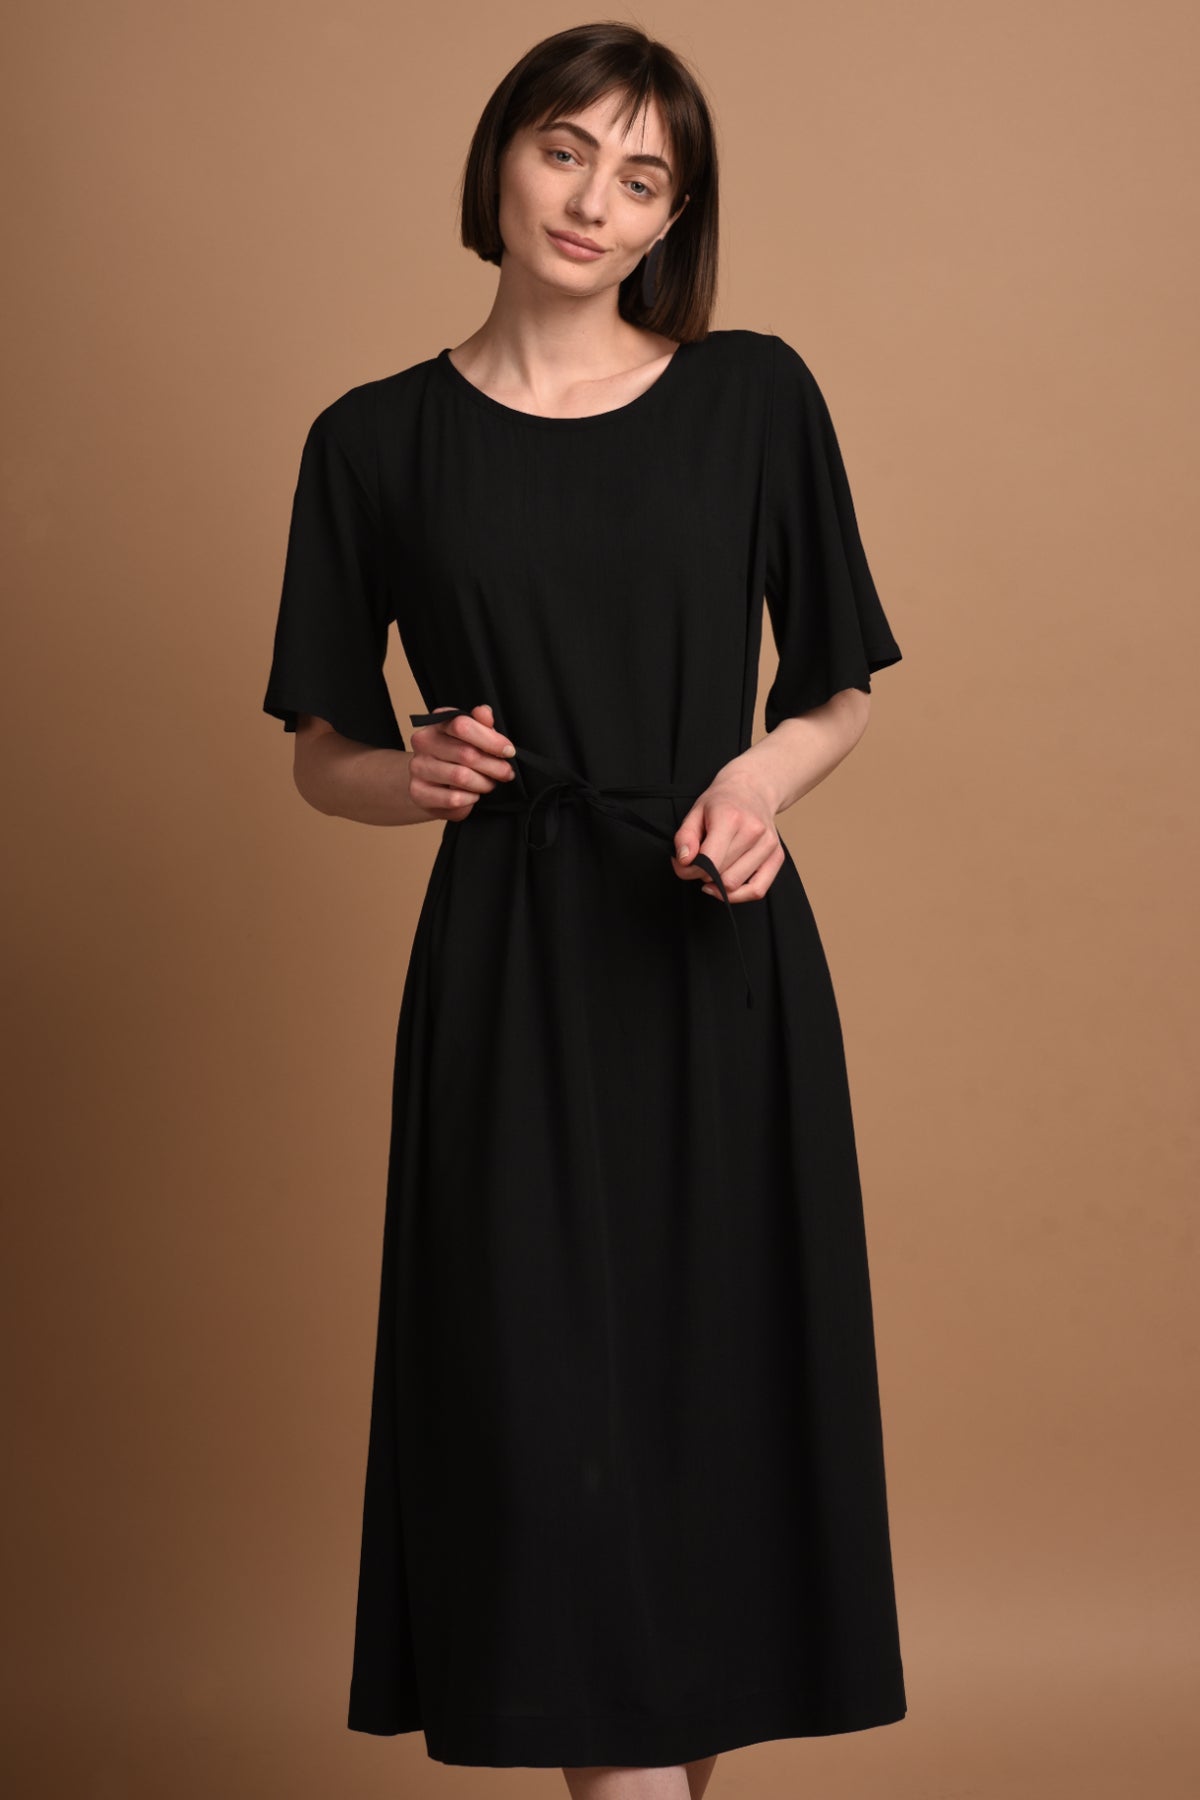 NIKA langes schwarzes Kleid mit Ärmeln. Schwarzes Kleid Sommer - AYANI